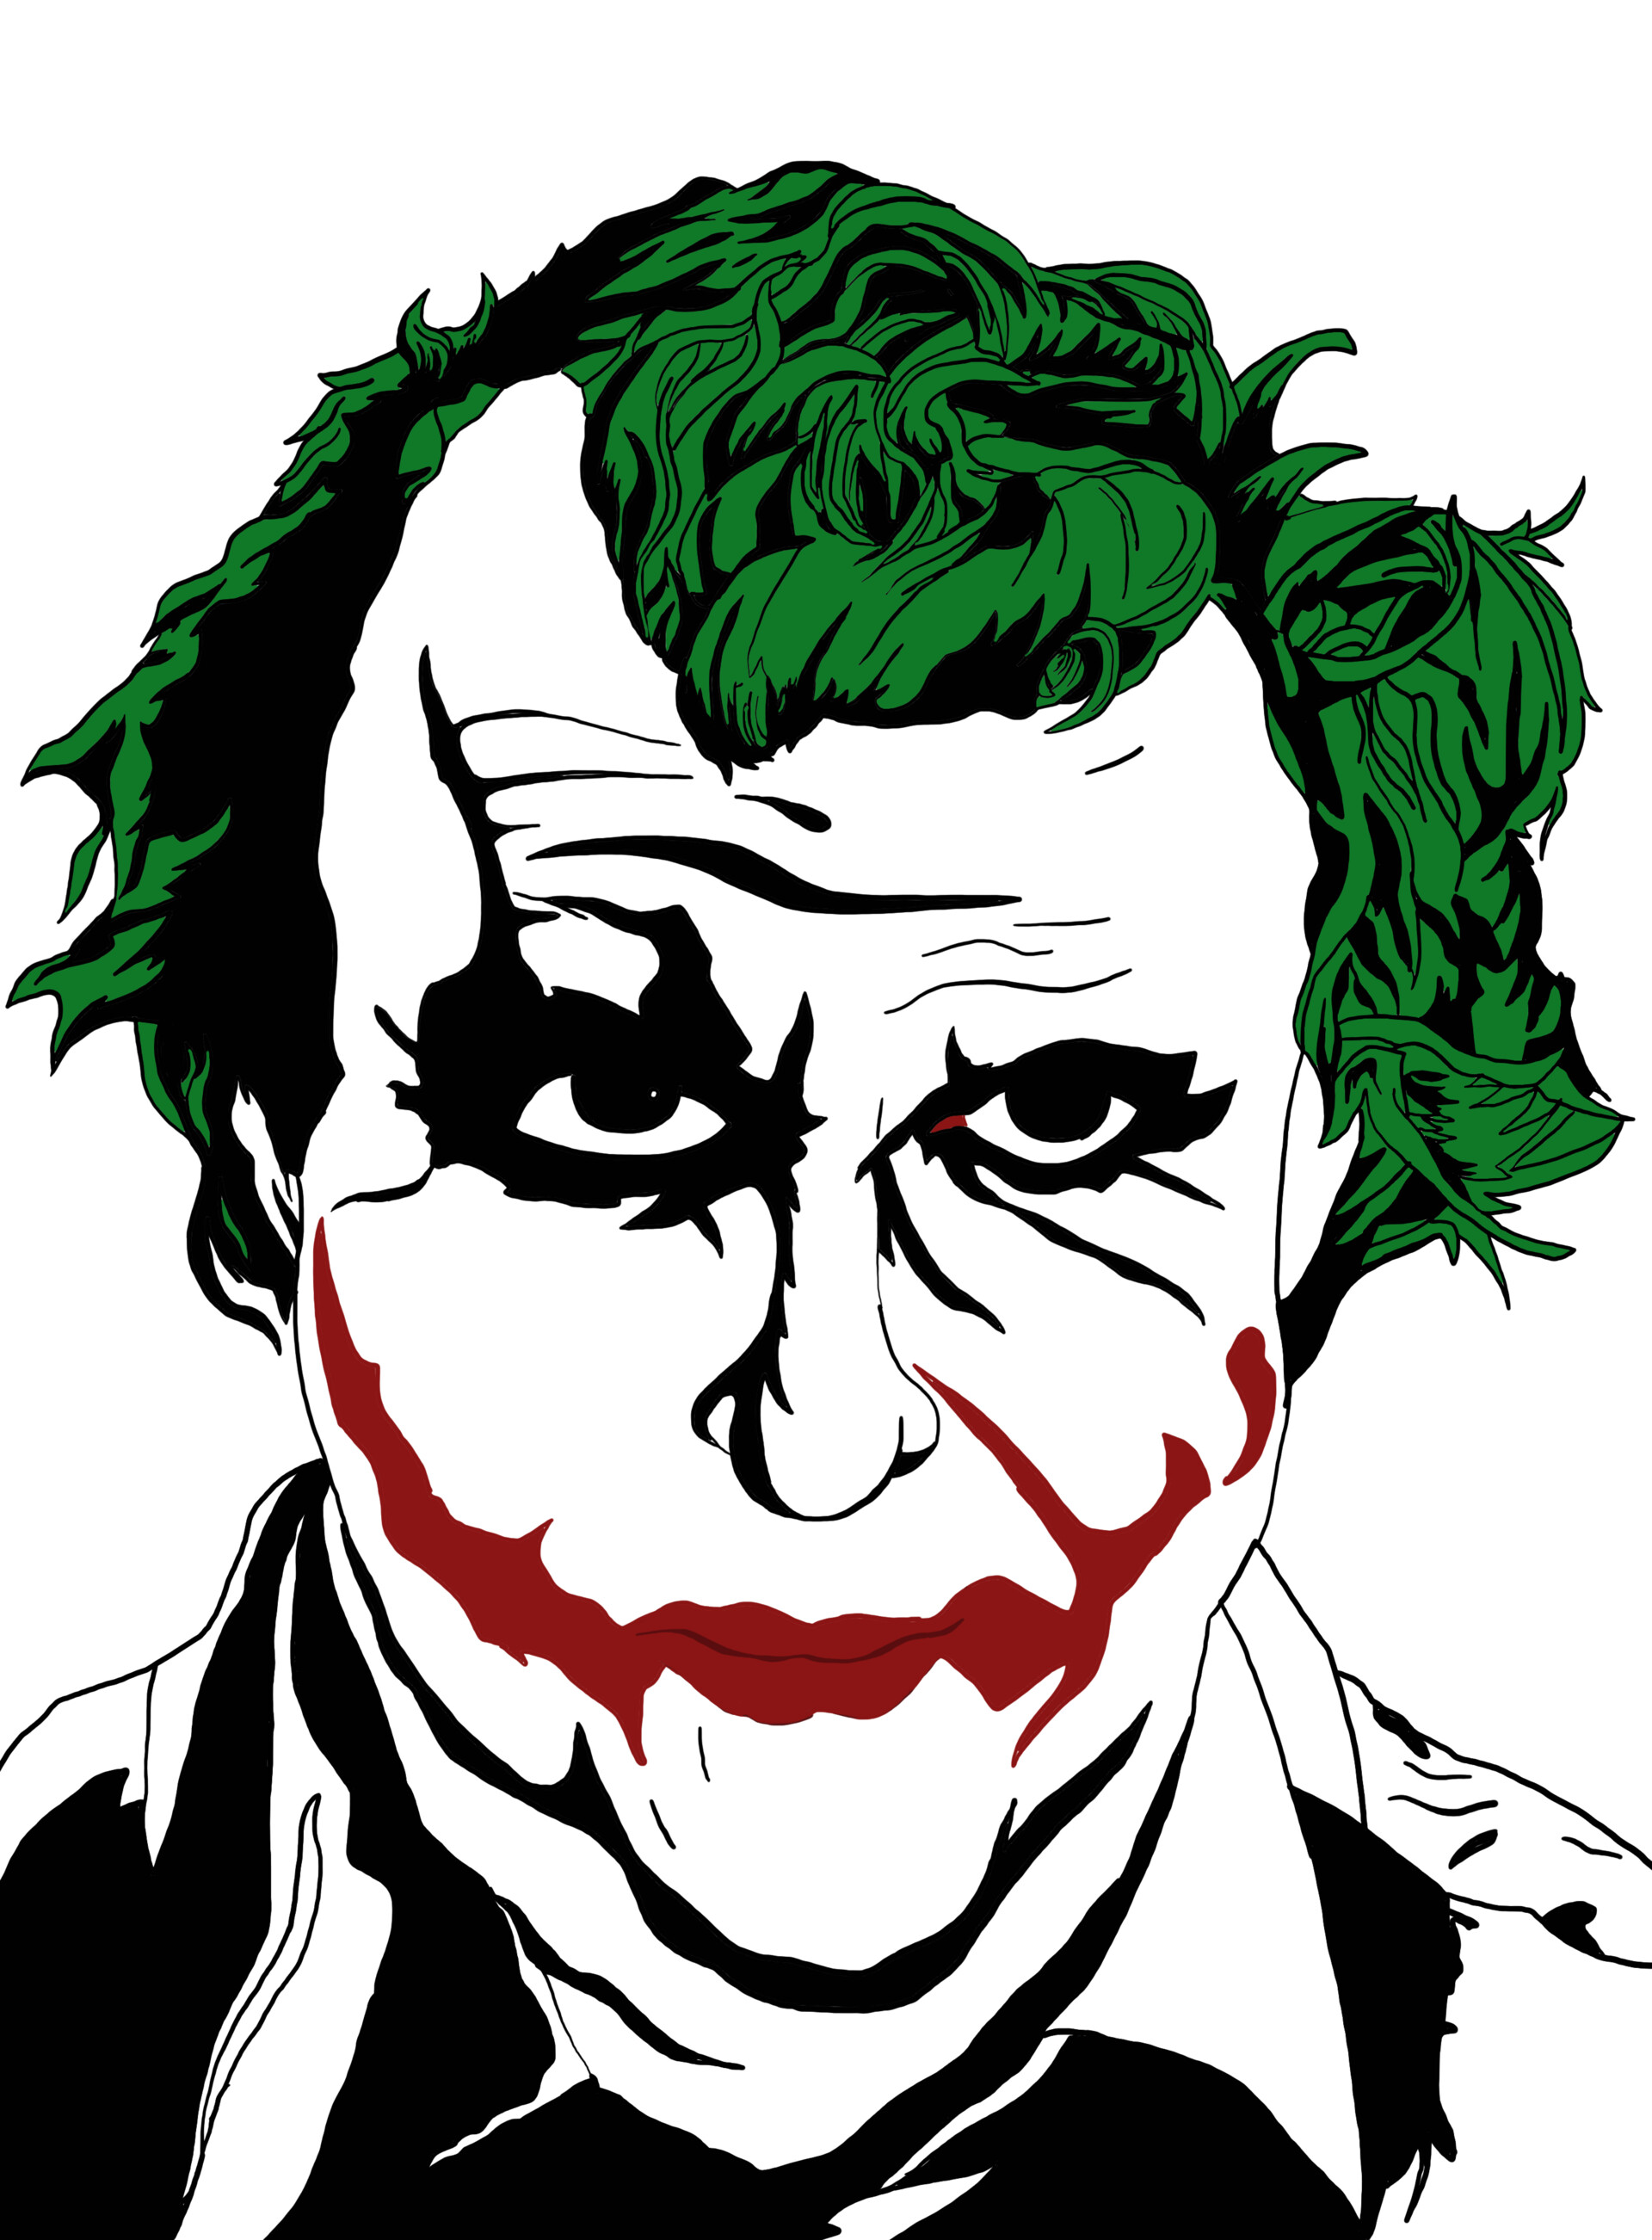 ArtStation - Heath Ledger Joker